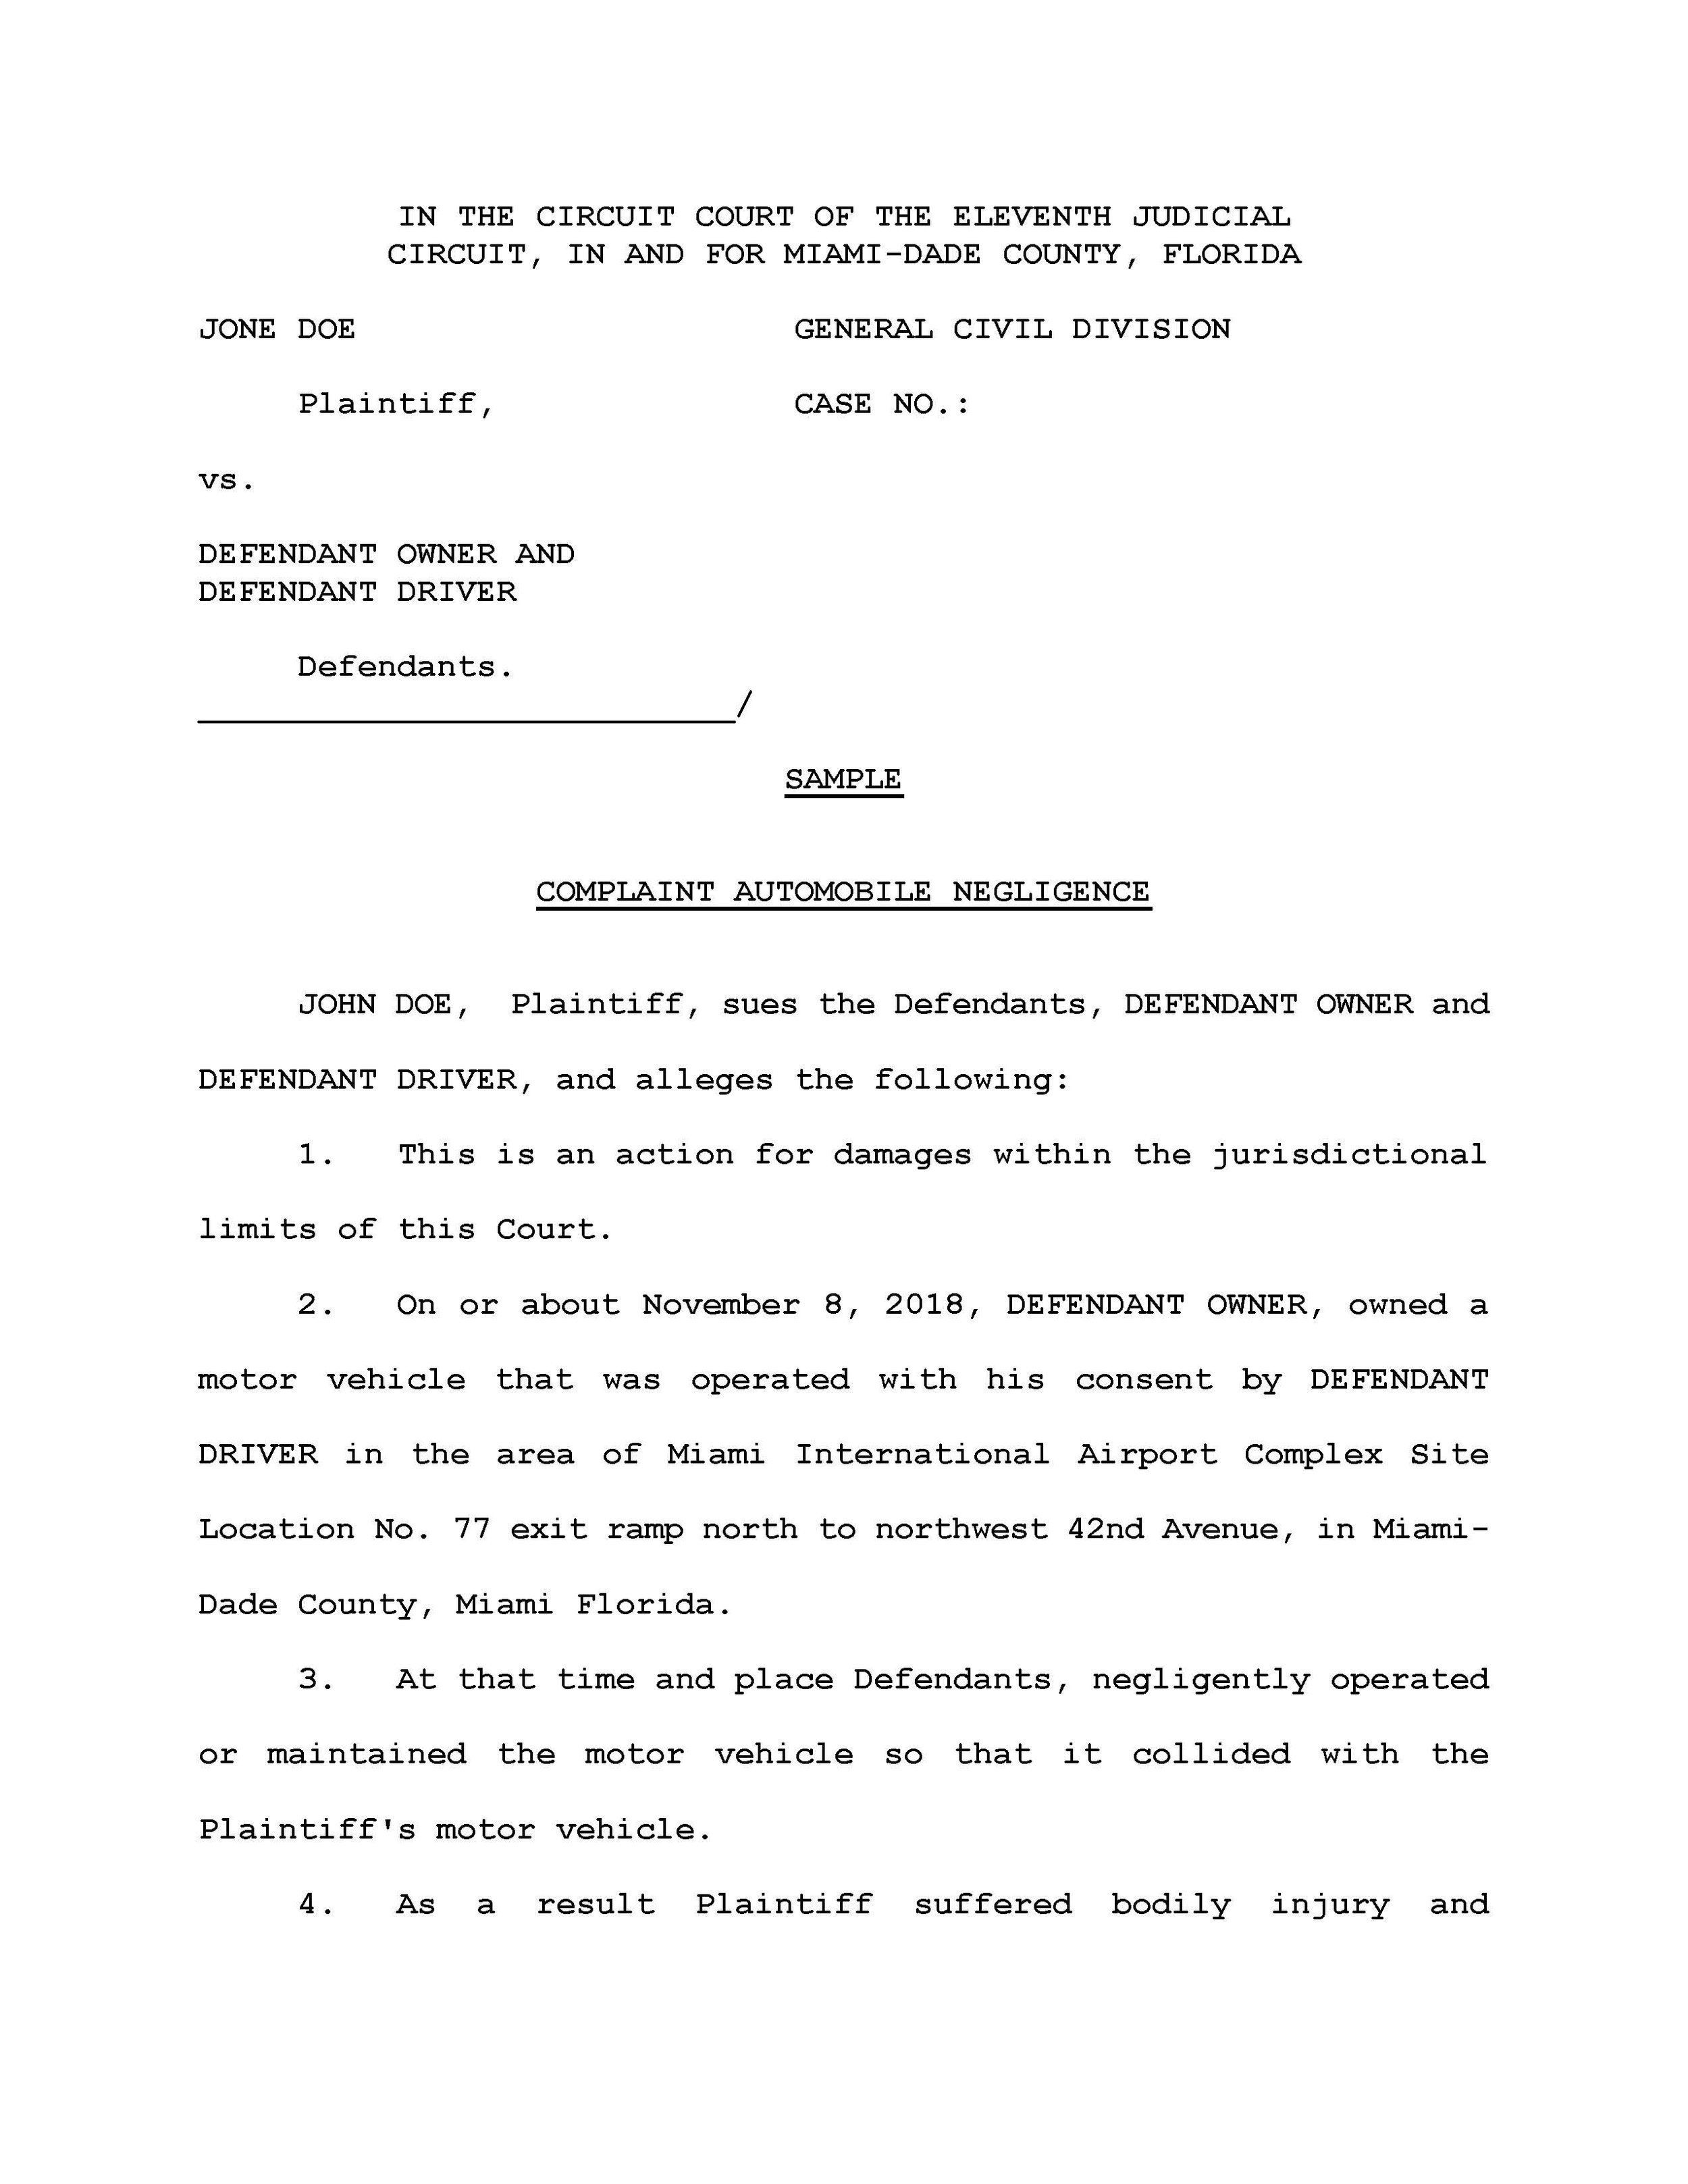 Kreutzer-Law-Attorney-Miami-Lawyers-Complaint Auto.neg_Page_1.jpg